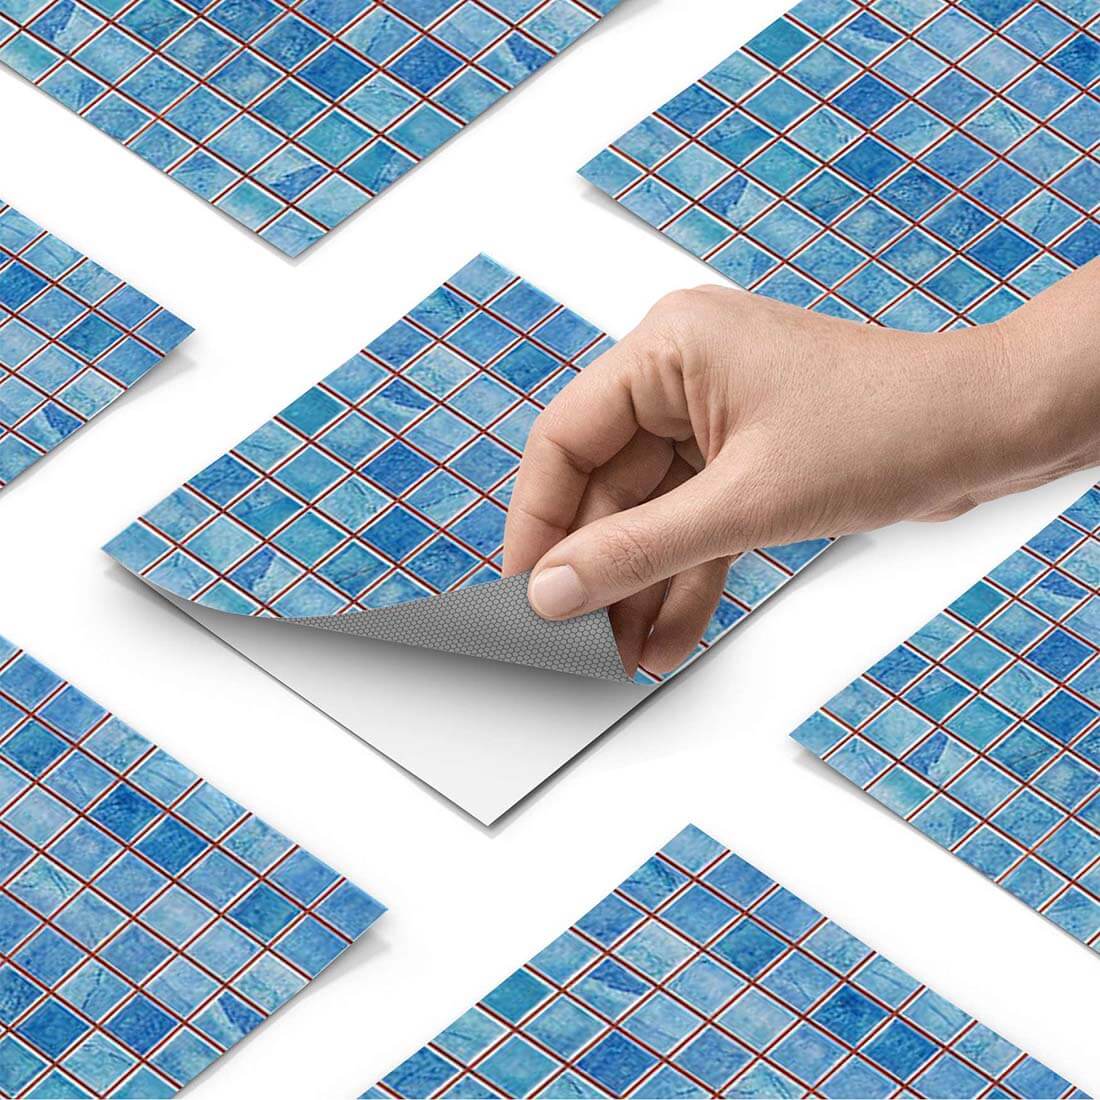 Klebefliesen Mosaik Blau - Paket - creatisto pds1